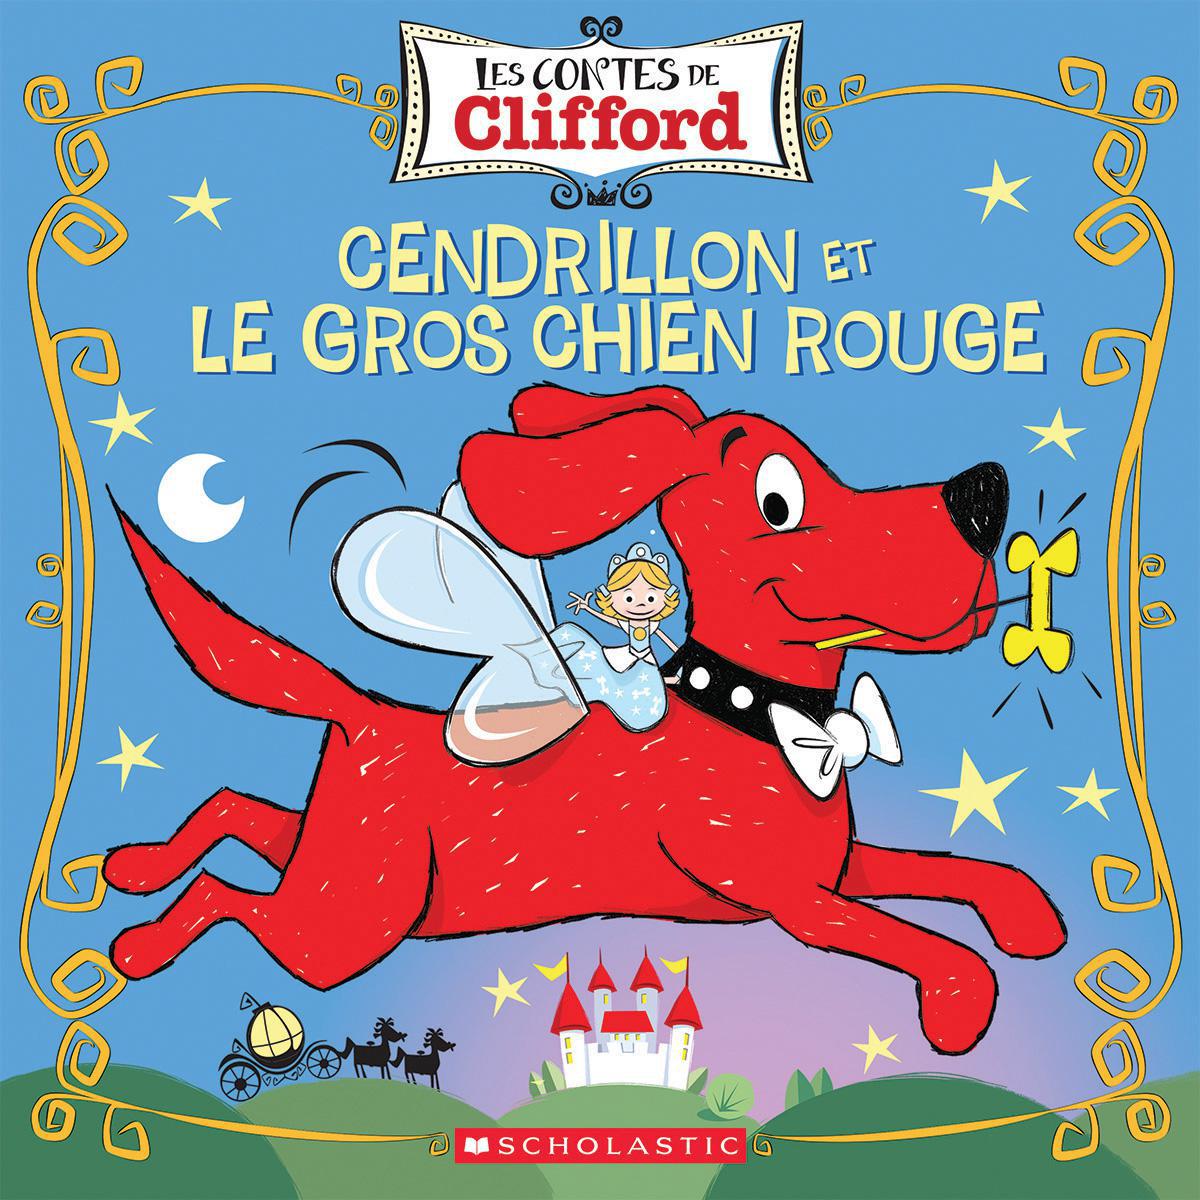  Les contes de Clifford : Cendrillon et le gros chien rouge 